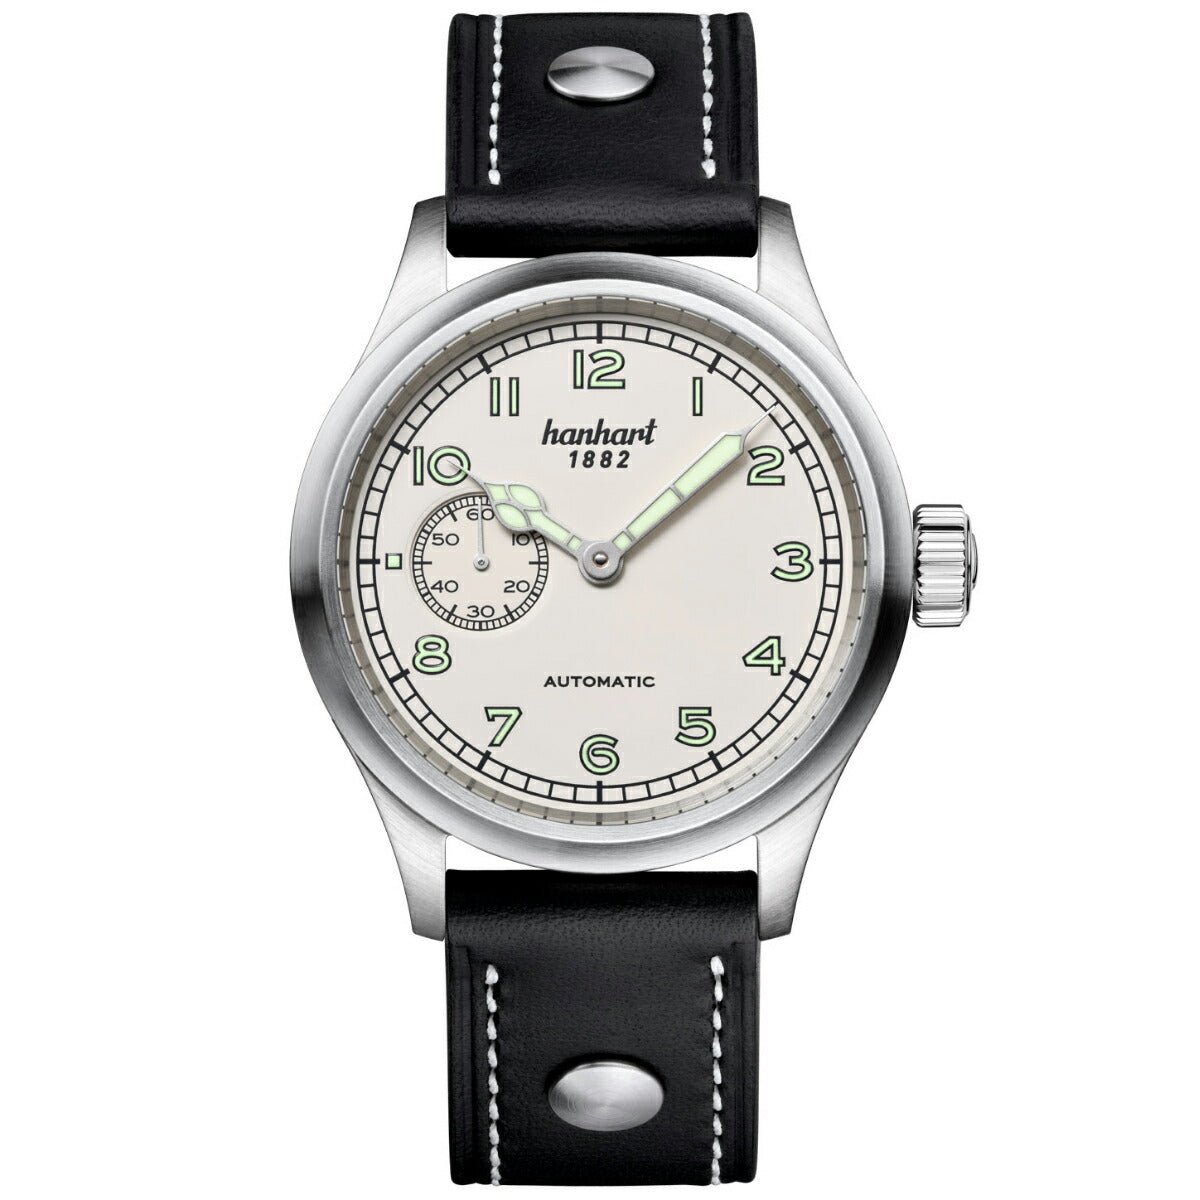 ハンハルト hanhart 腕時計 メンズ パイオニア プリヴェンター9 PIONEER Preventor9 自動巻き 1H752.200-0010